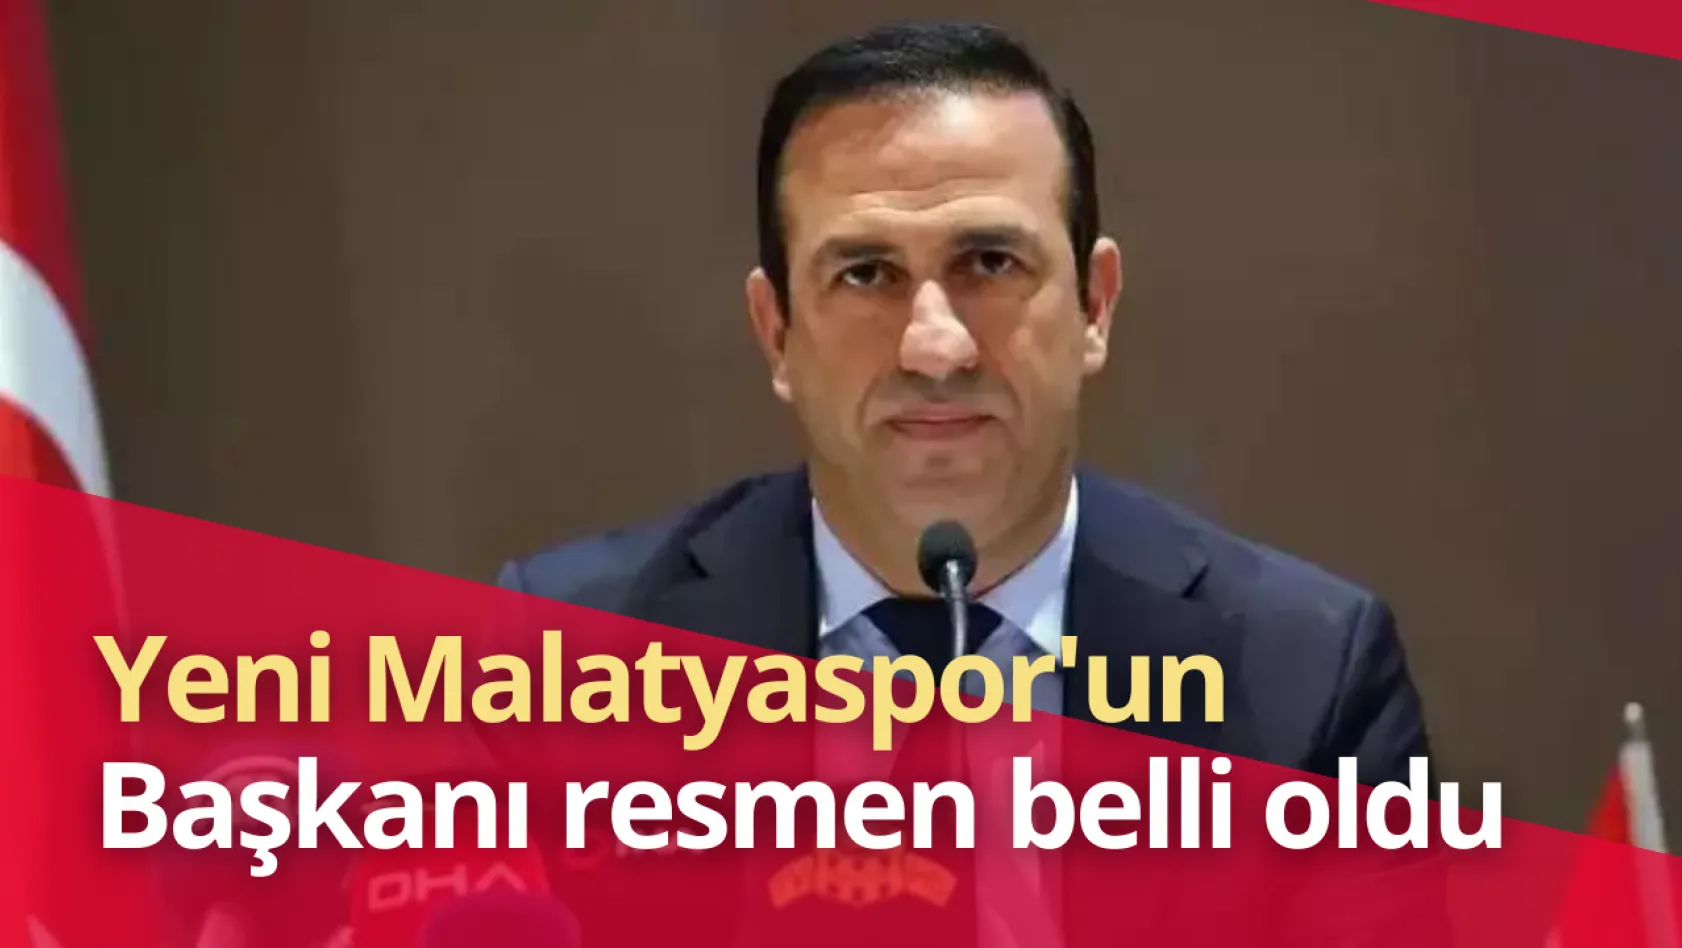 Yeni Malatyaspor'un Başkanı resmen belli oldu